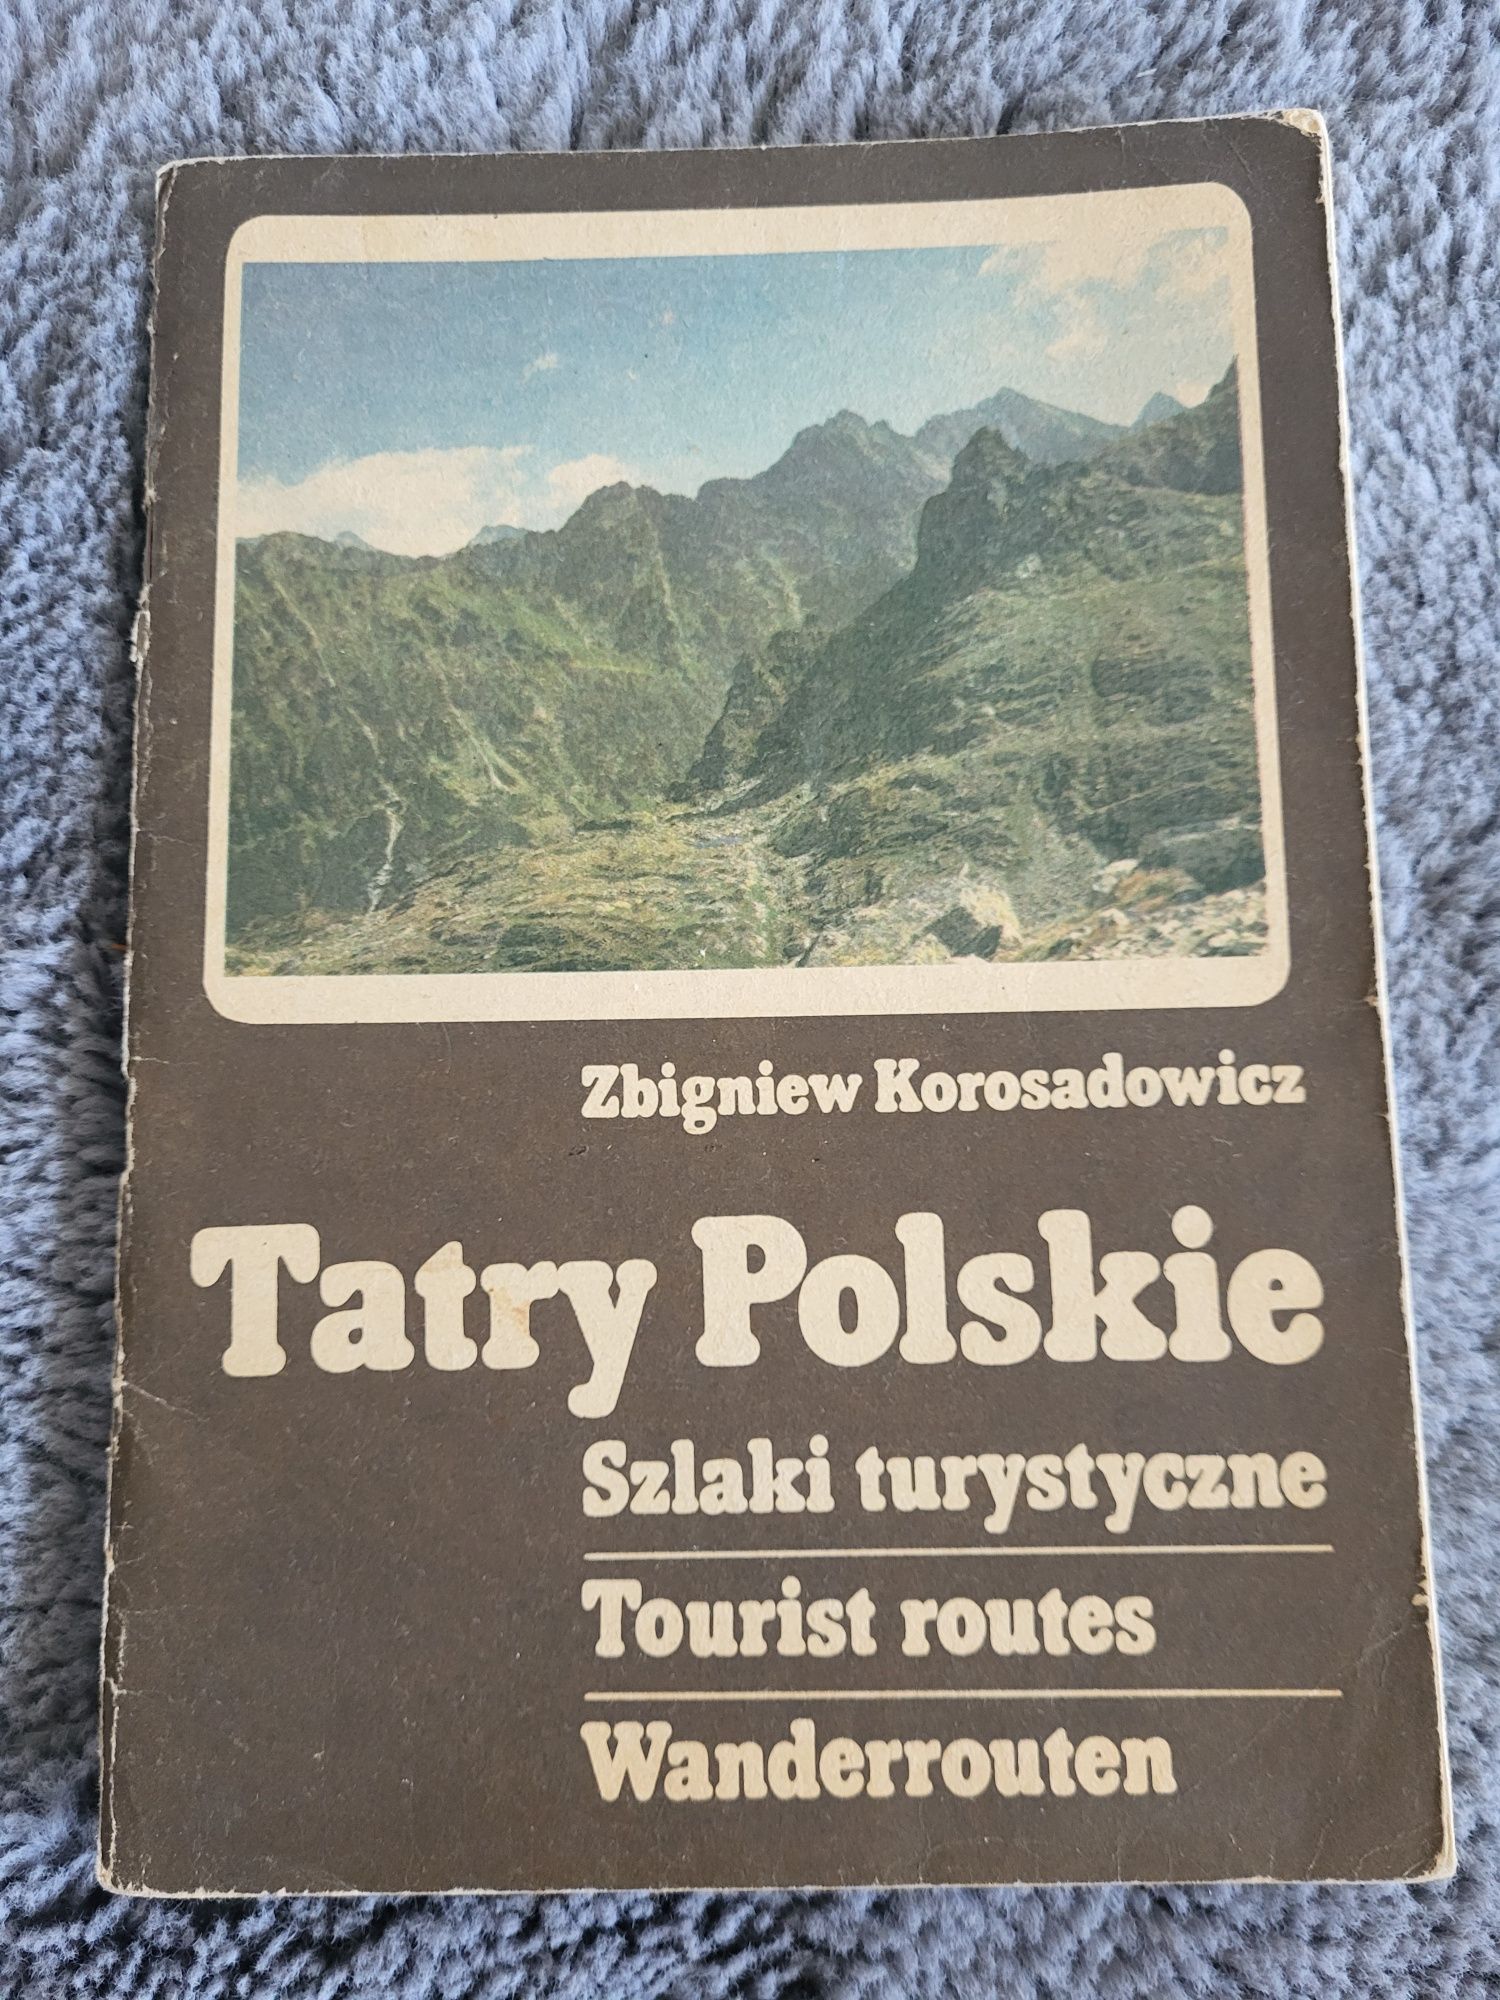 Tatry Polskie Szlaki turystyczne z 1984 roku